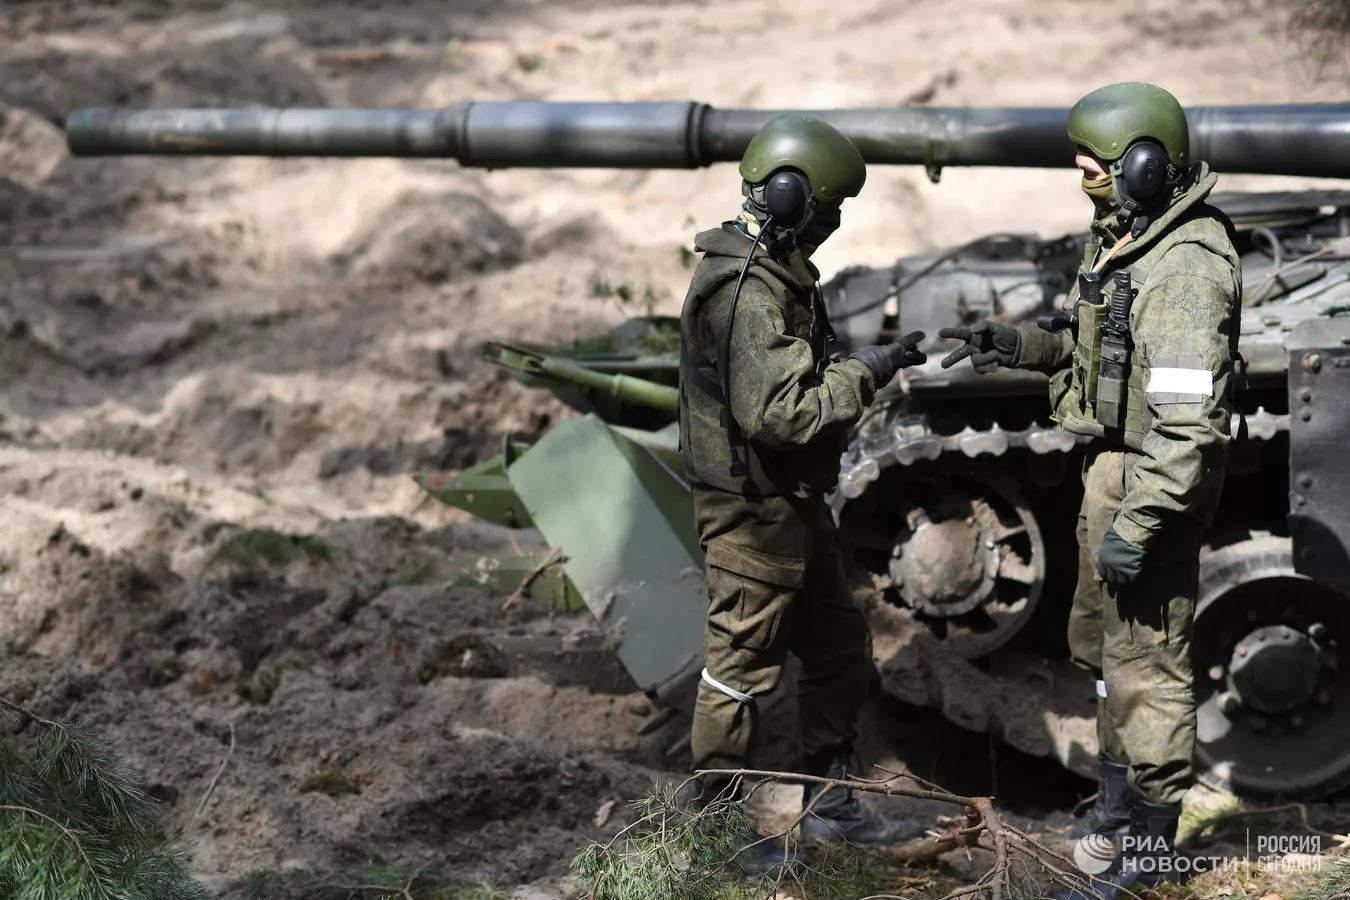 Российские танкисты, играющие в "Камень-ножницы-бумага", вероятно, решают, кто будет натягивать гусеницы, 2022 г.